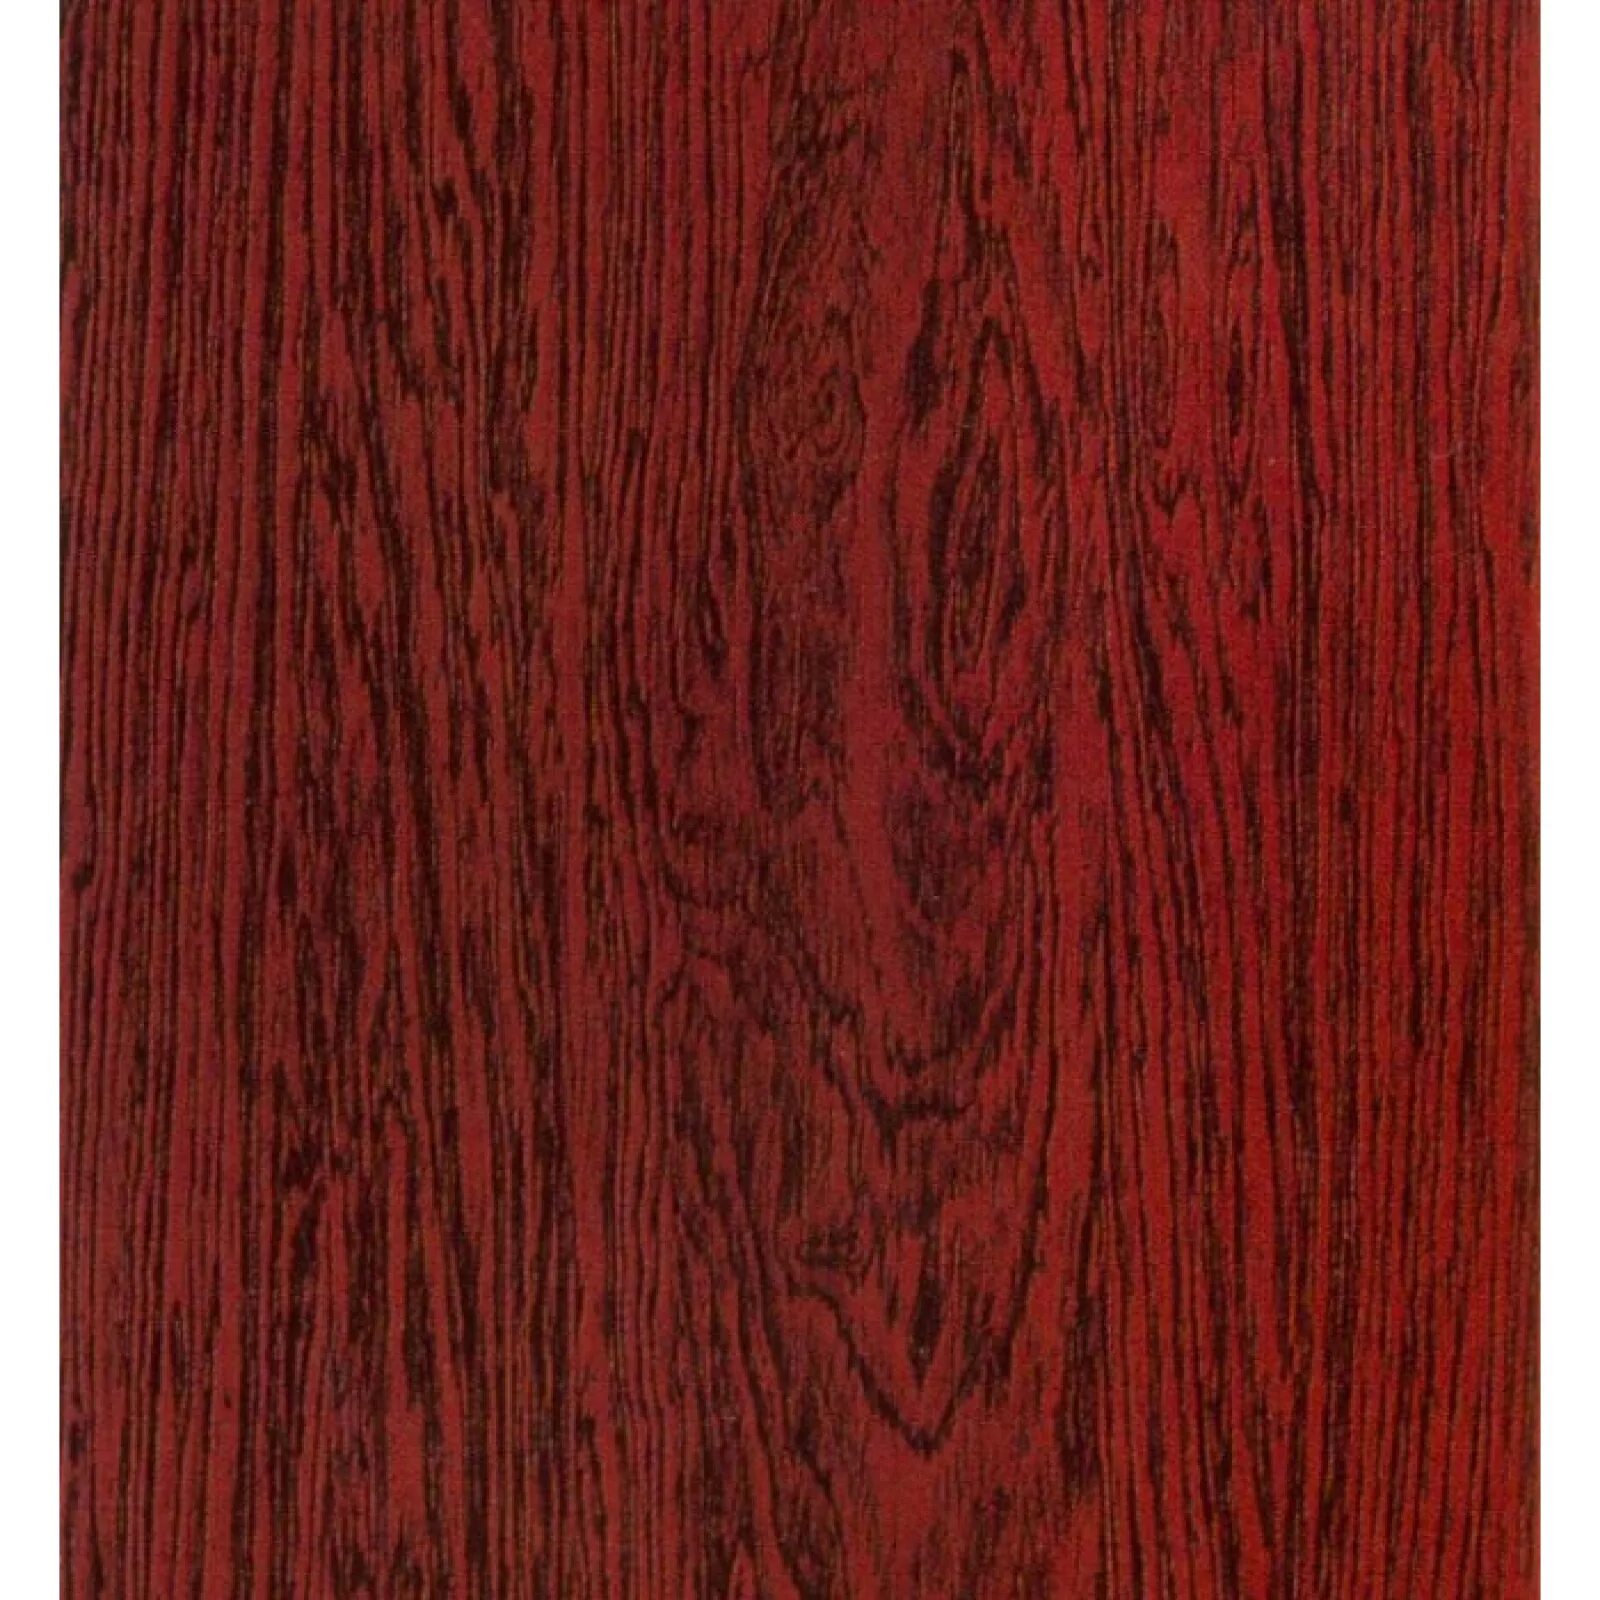 Красное дерево махагон. Махагон тр 221 пленка ПВХ. Пленка самоклеящаяся дуб красный 0,45*8м. Fabio FXL-411 MN (массив махагон + ель). Фото цвета красное дерево